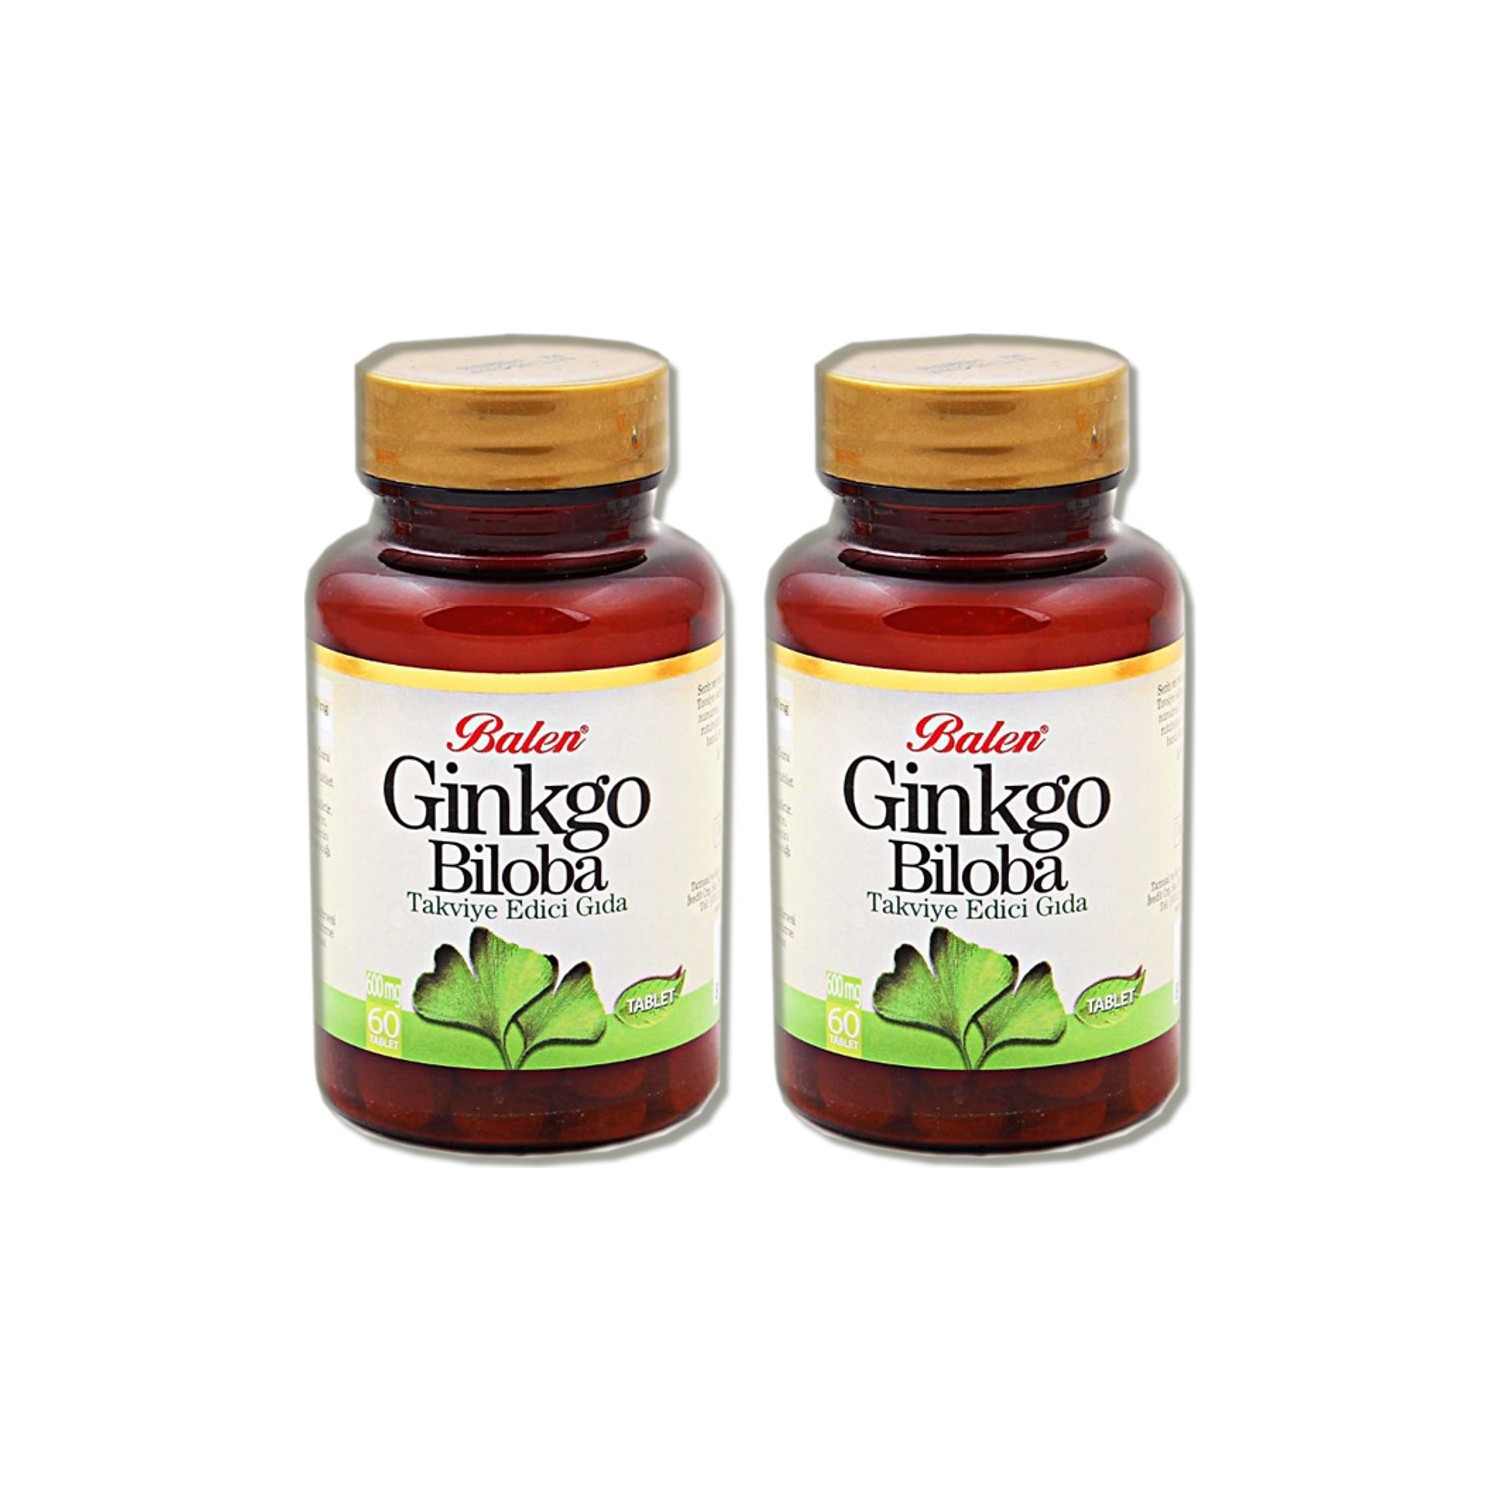 Активная добавка Balen Ginkgo Biloba Capsules, 60 капсул, 600 мг, 2 штуки бад для поддержки нервной системы now ginkgo biloba корень элеутерококка в капсулах 50 шт